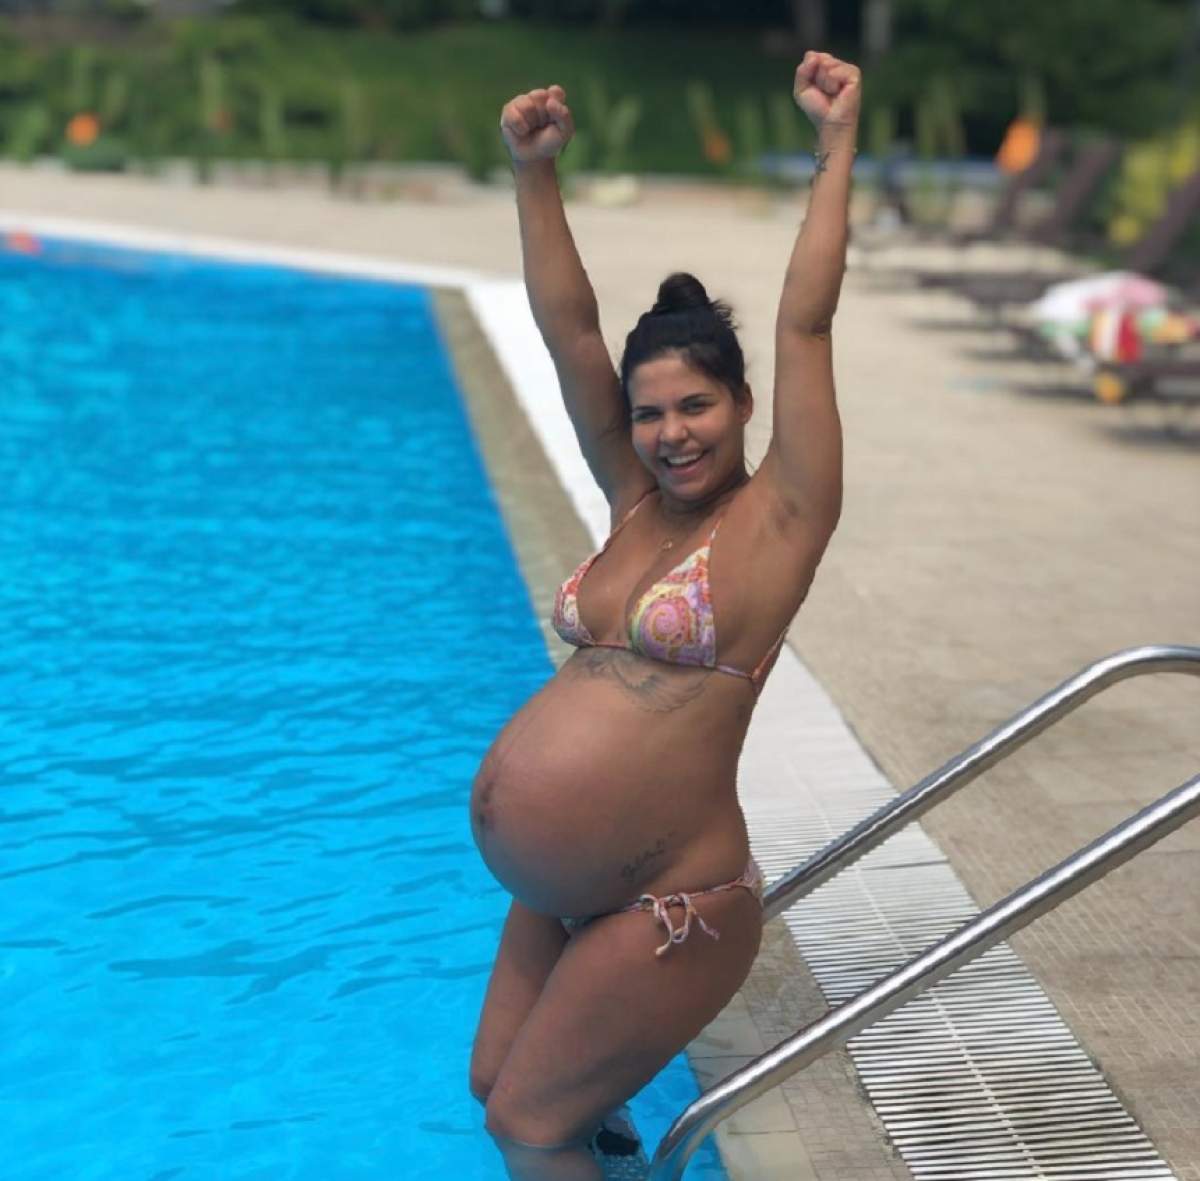 VIDEO / Andreea Popescu, fosta dansatoare a Deliei, activă şi în ultimele zile de sarcină! S-a distrat pe cinste la piscină